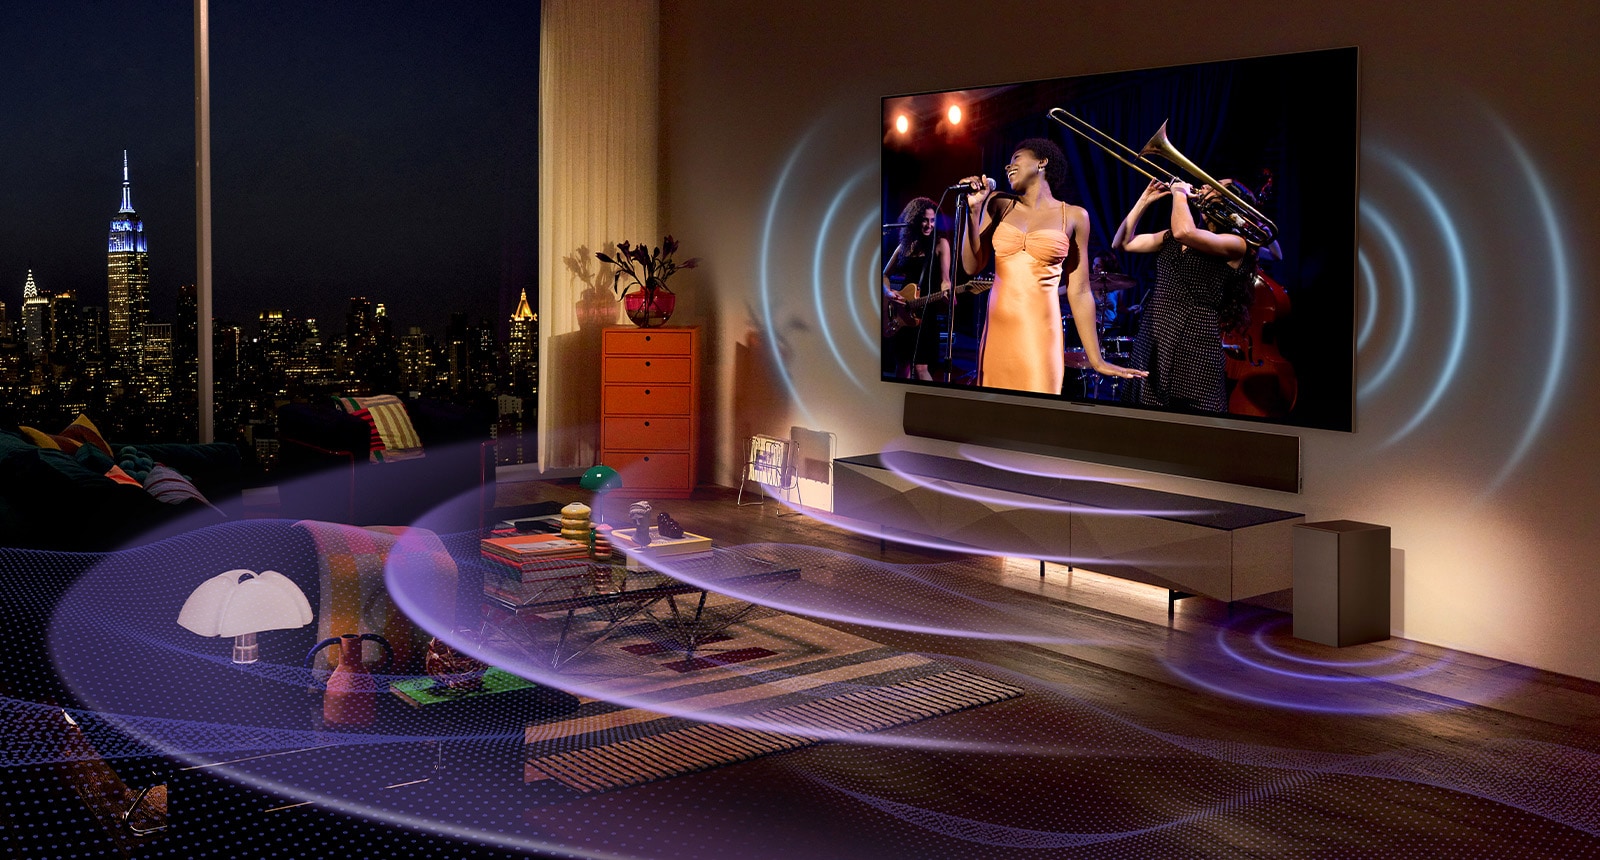 تصویری از تلویزیون LG OLED در اتاقی که کنسرت موسیقی را نشان می‌دهد. خطوط منحنی آبی که صدای تلویزیون را به تصویر می‌کشند و خطوط منحنی بنفش که صدای ساندبار را بیان می‌کنند، فضا را پر می‌کنند.